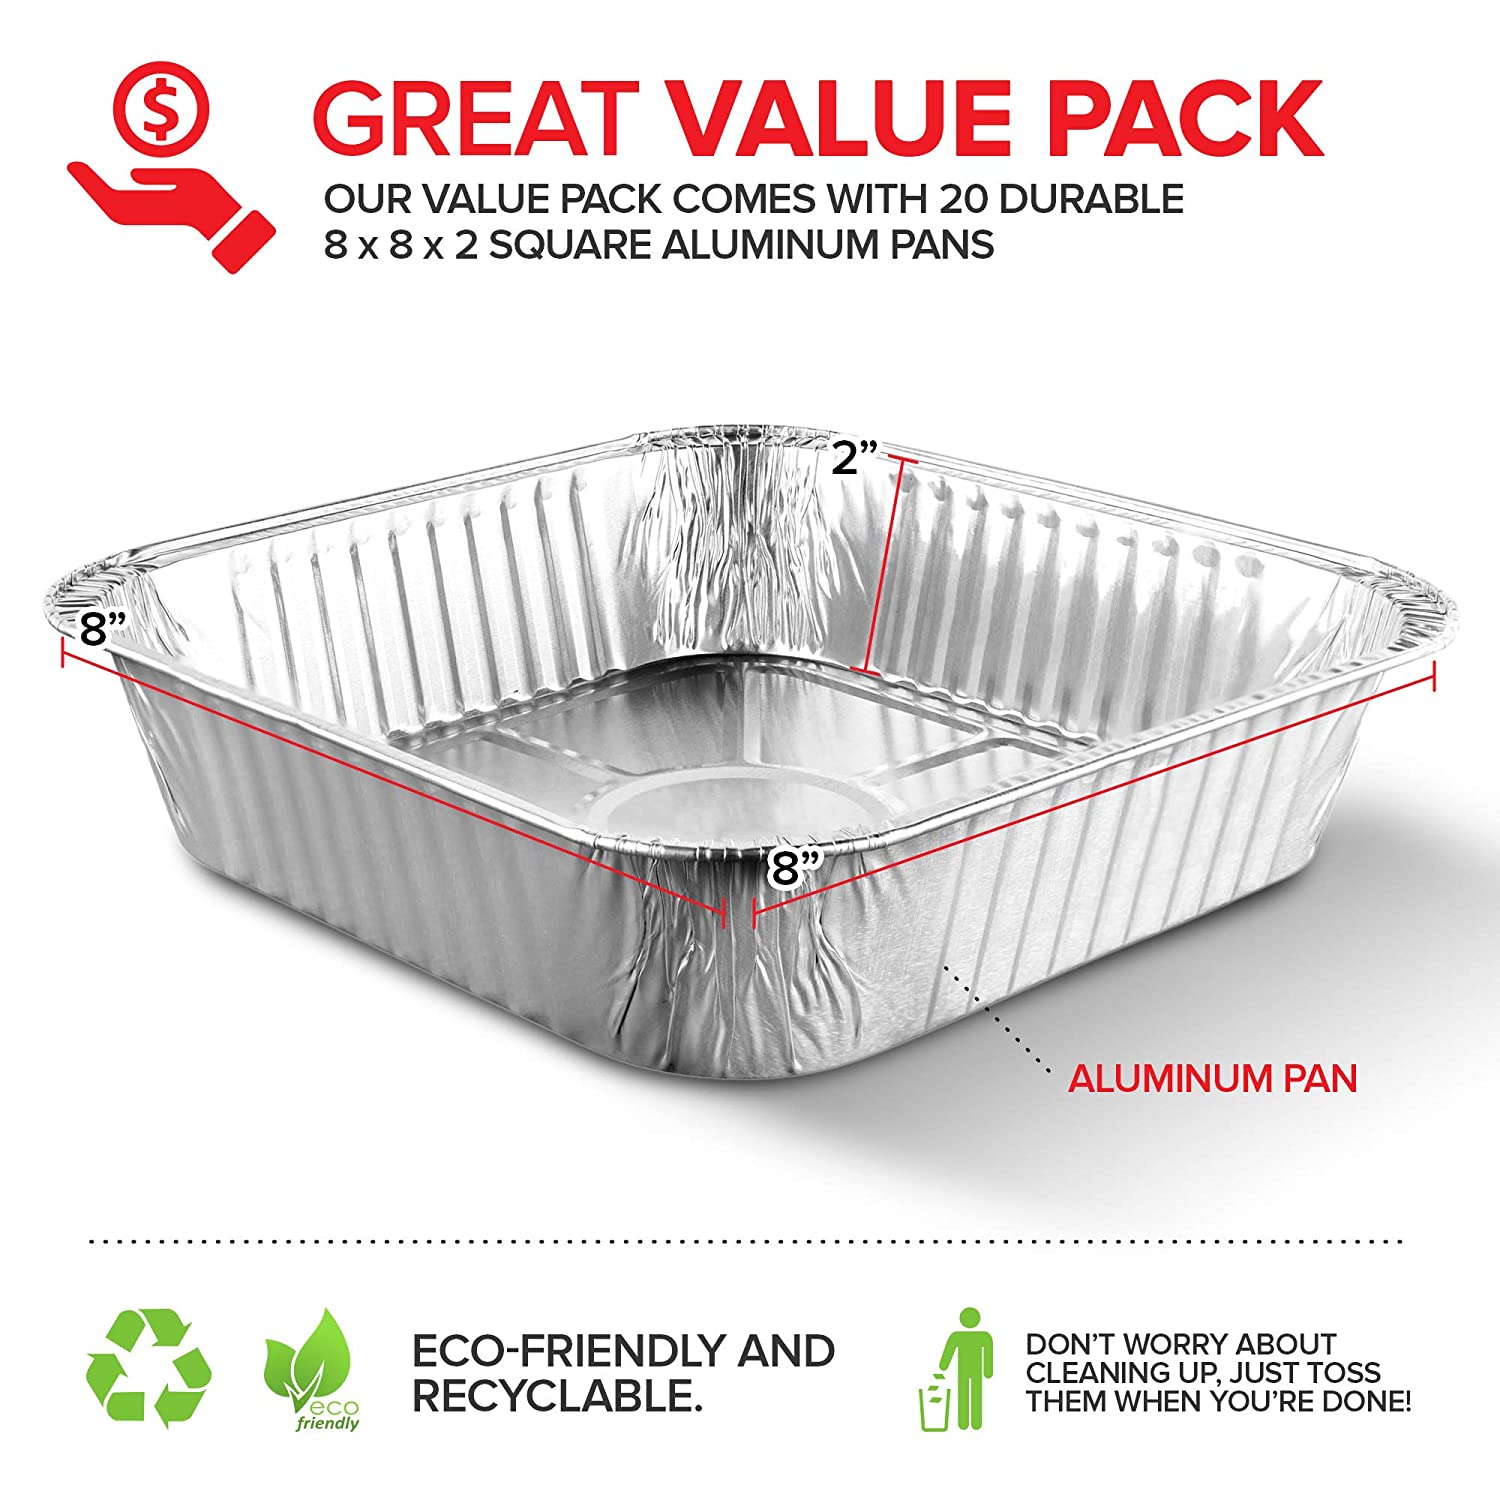 Aluminum Pans 8x8 Disposable Foil Pans (20 Pack) - 8 Inch Square